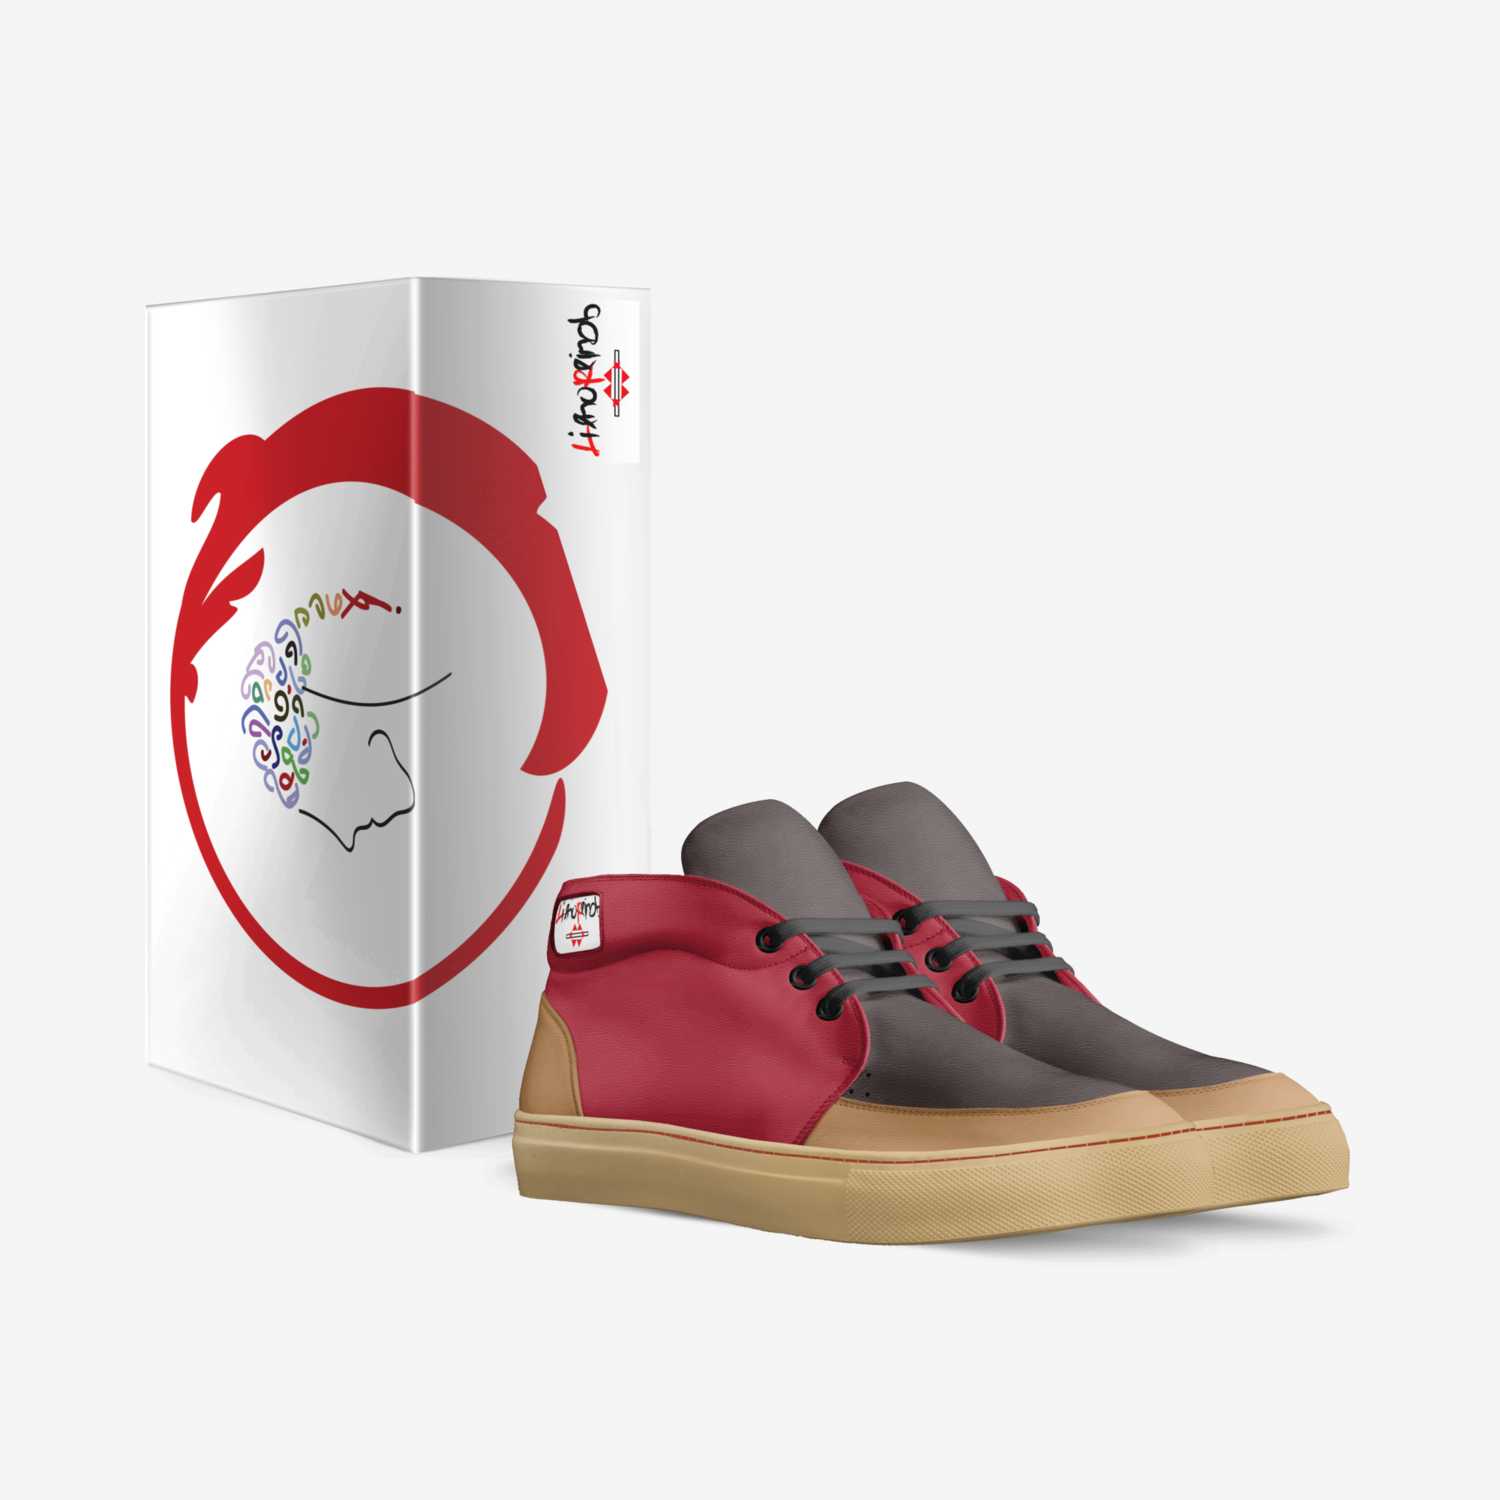 Lieno Reinob custom made in Italy shoes by O’neil Bonier | Box view